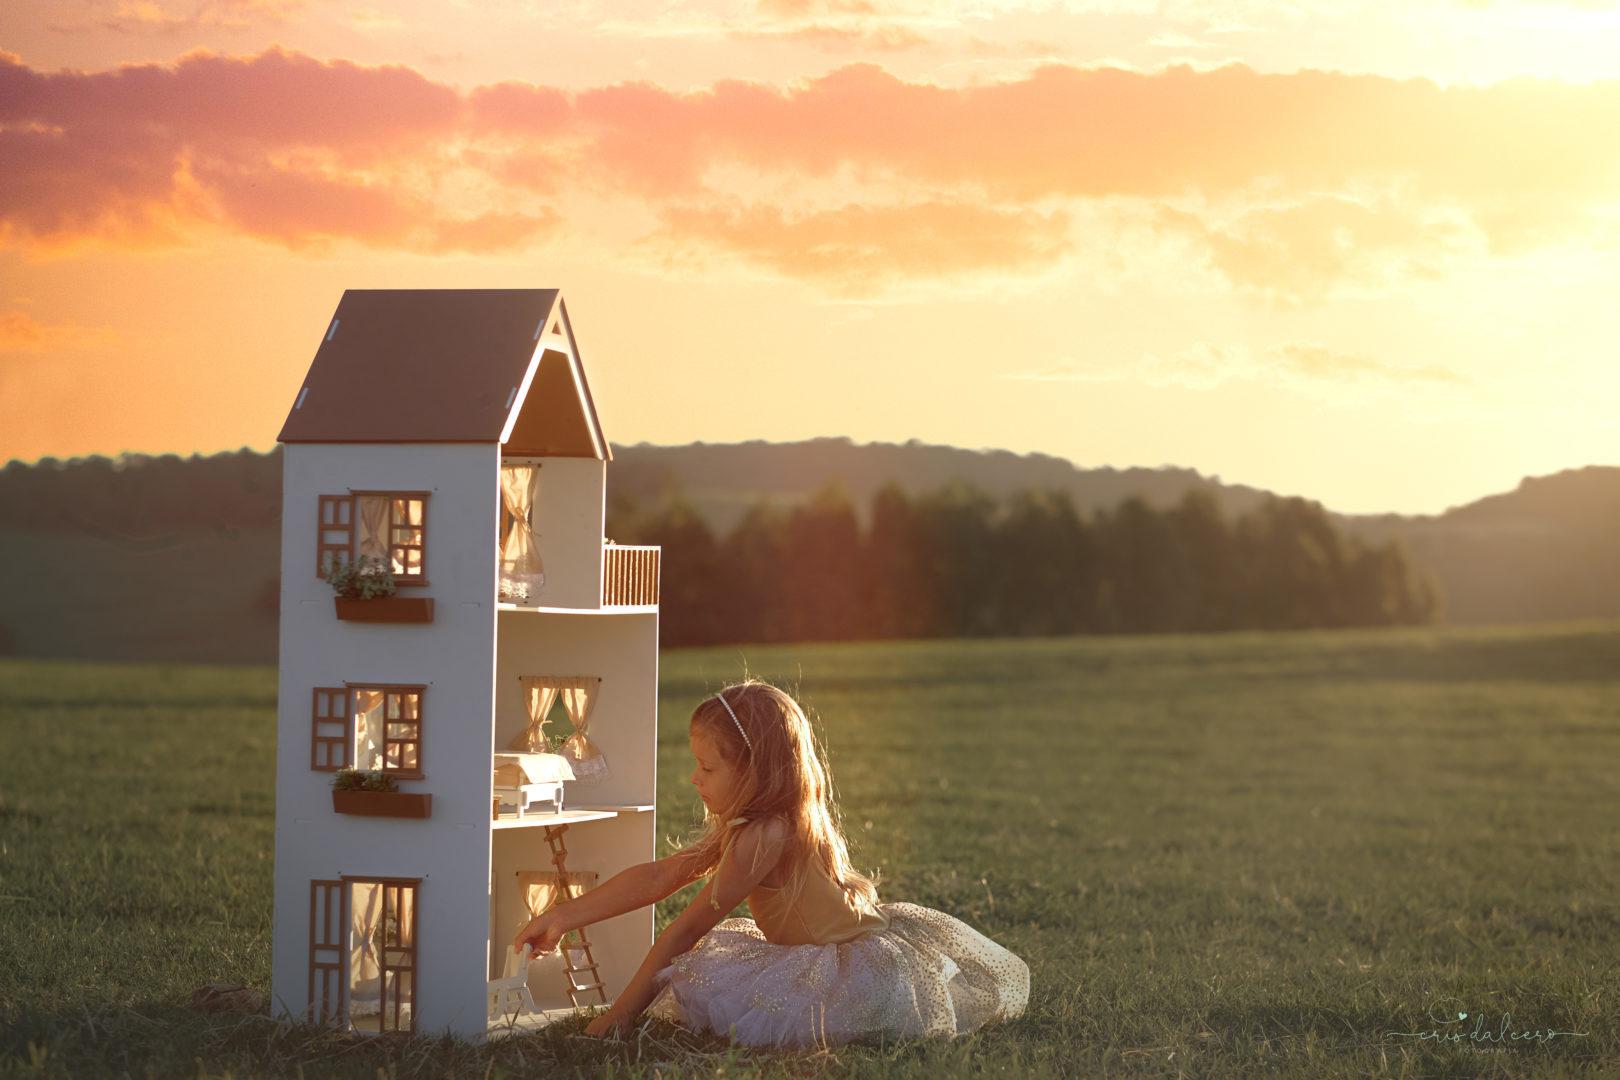 Menina brincando de casinha em um cenário mágico. Campo verde e nuances alaranjadas do sol deixam o ambiente com aparência bucólica.